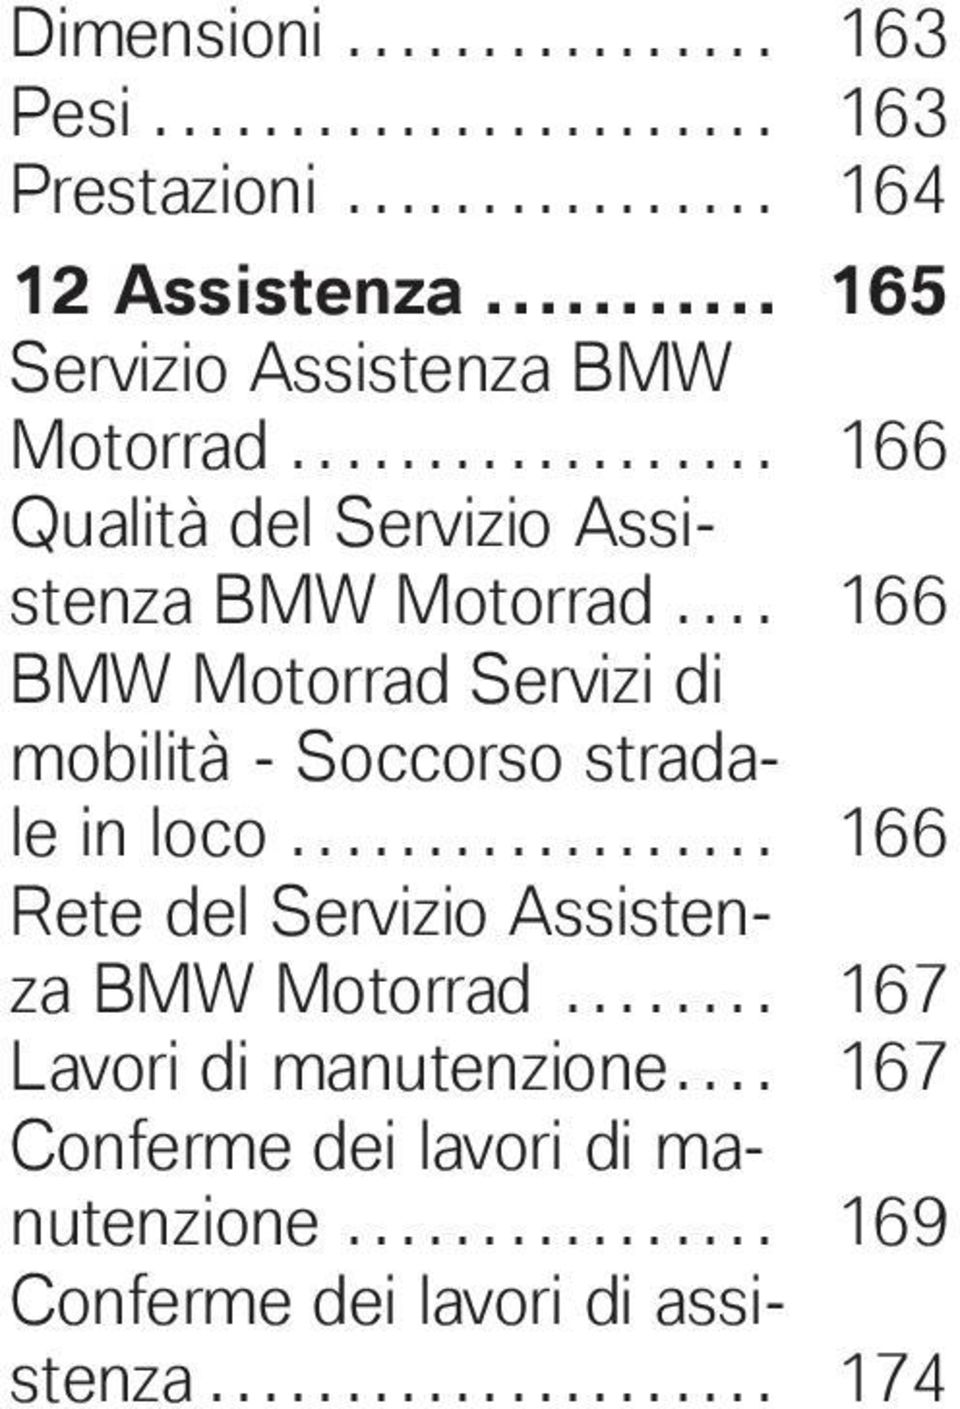 ... 166 BMW Motorrad Servizi di mobilità - Soccorso stradale in loco.................. 166 Rete del Servizio Assistenza BMW Motorrad.